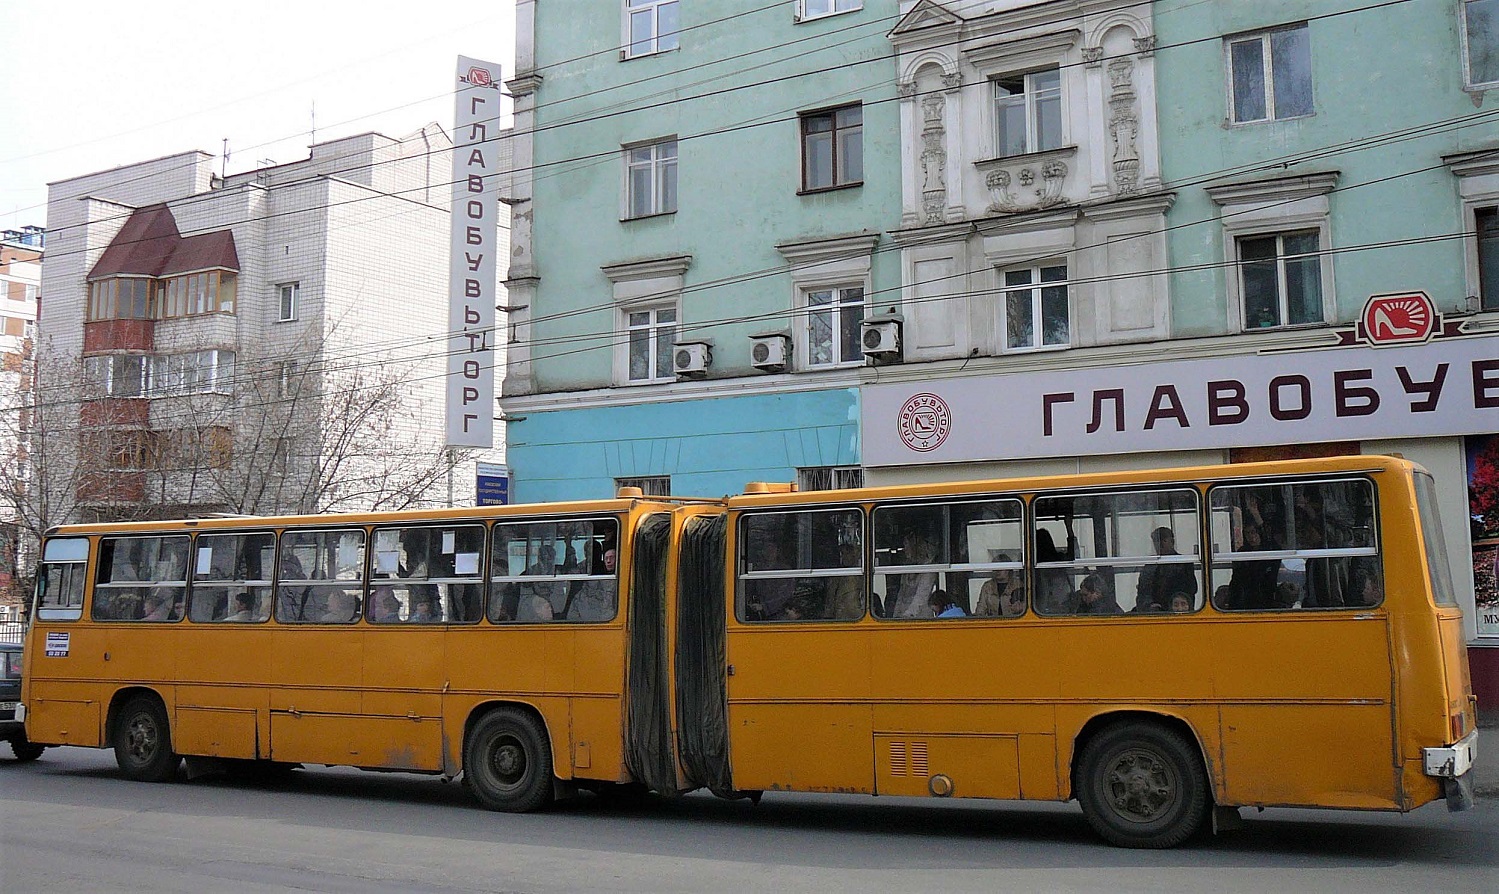 Izhevsk, Ikarus 280.64 # КА 189 18